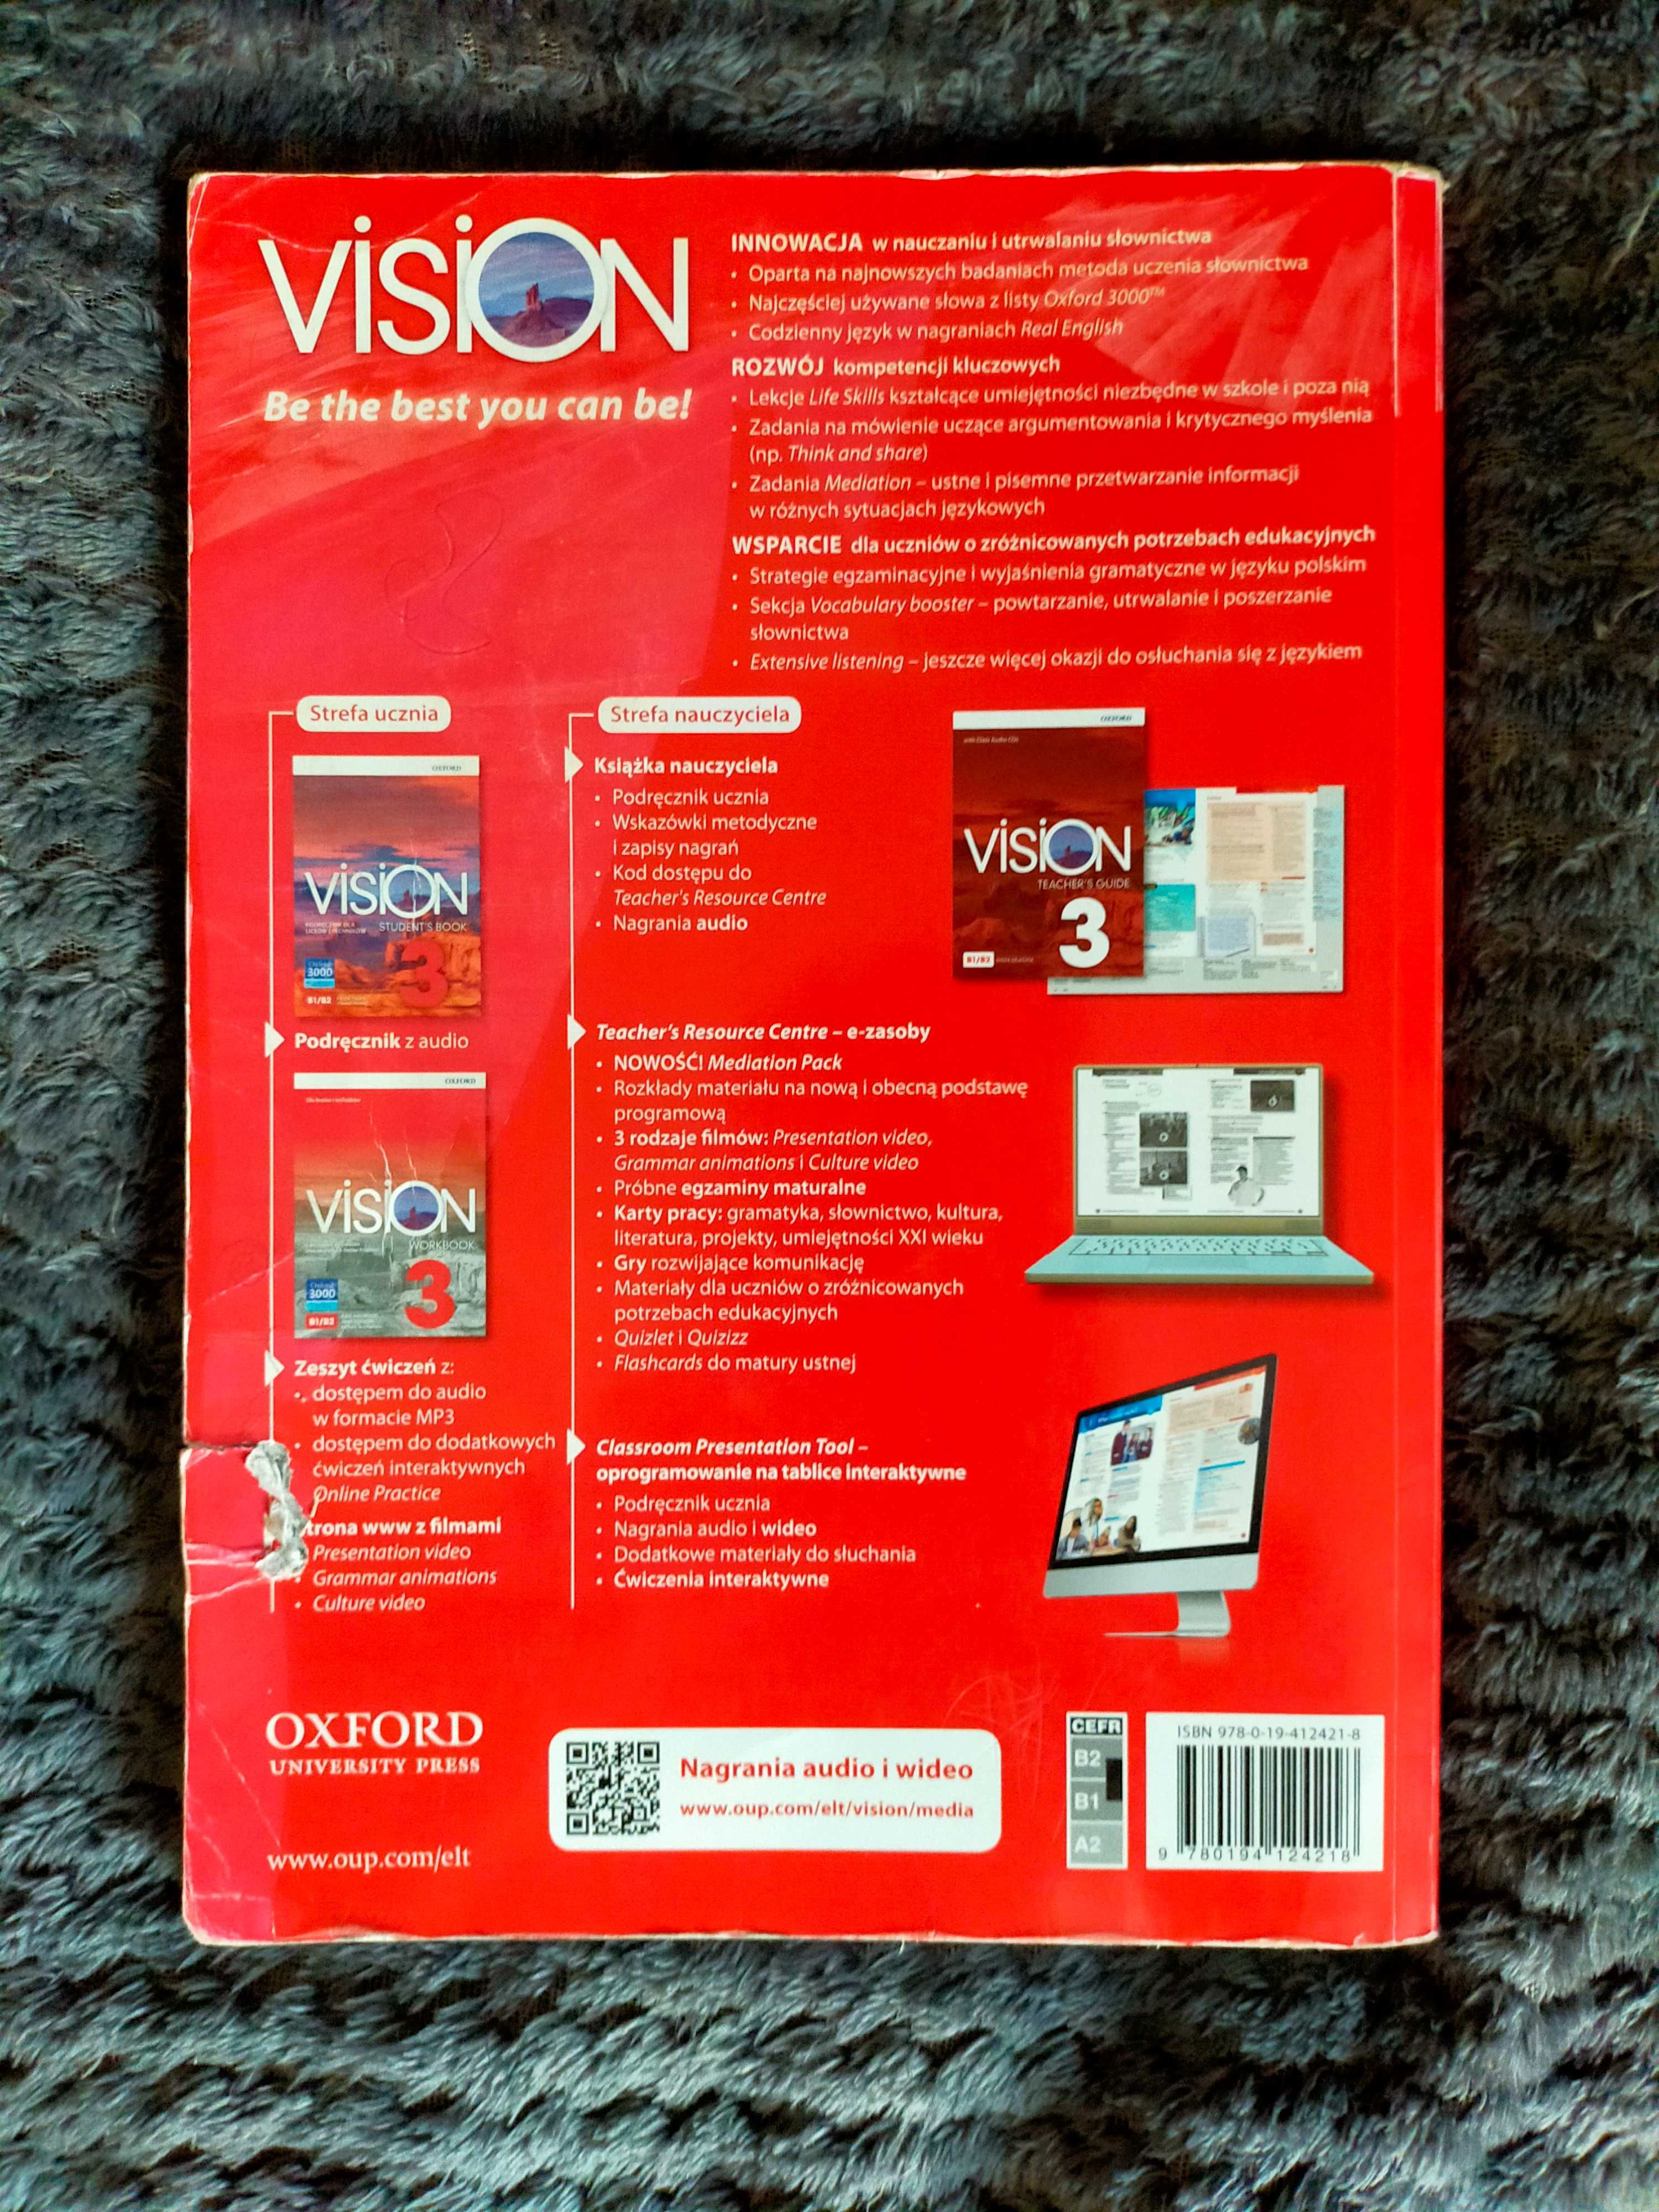 Vision 3 Workbook zakres podstawowy i rozszerzony. Uzupełniony